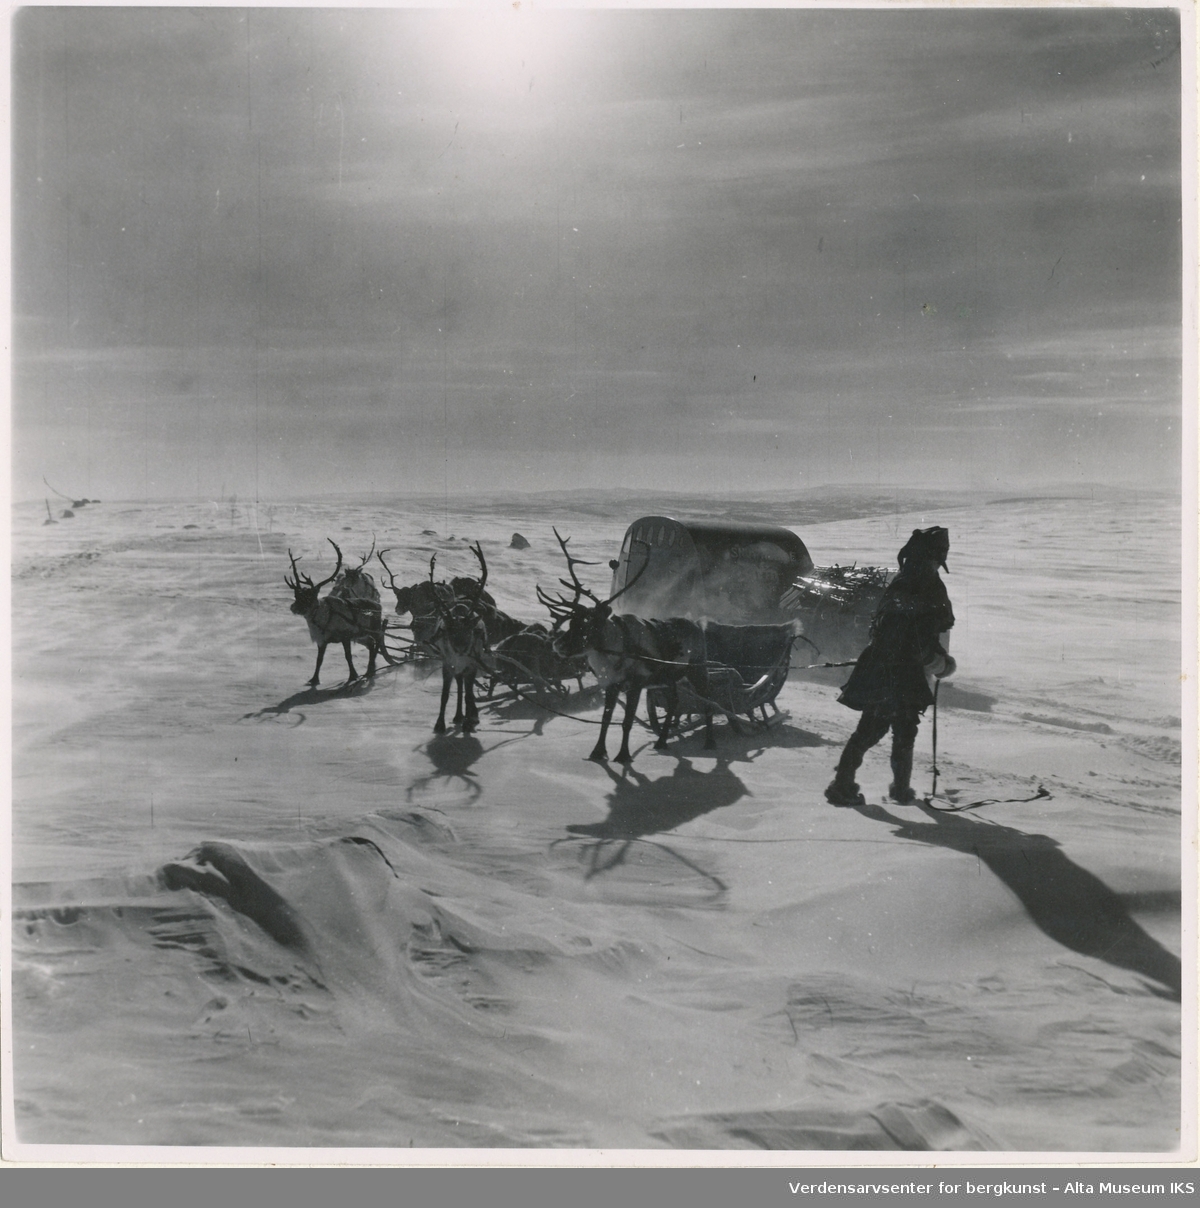 Vinter på Beskades. Samisk mann med fire rein som trekker på slede møter en snøskuter, muligens av merket Bombardier 1949 B12.